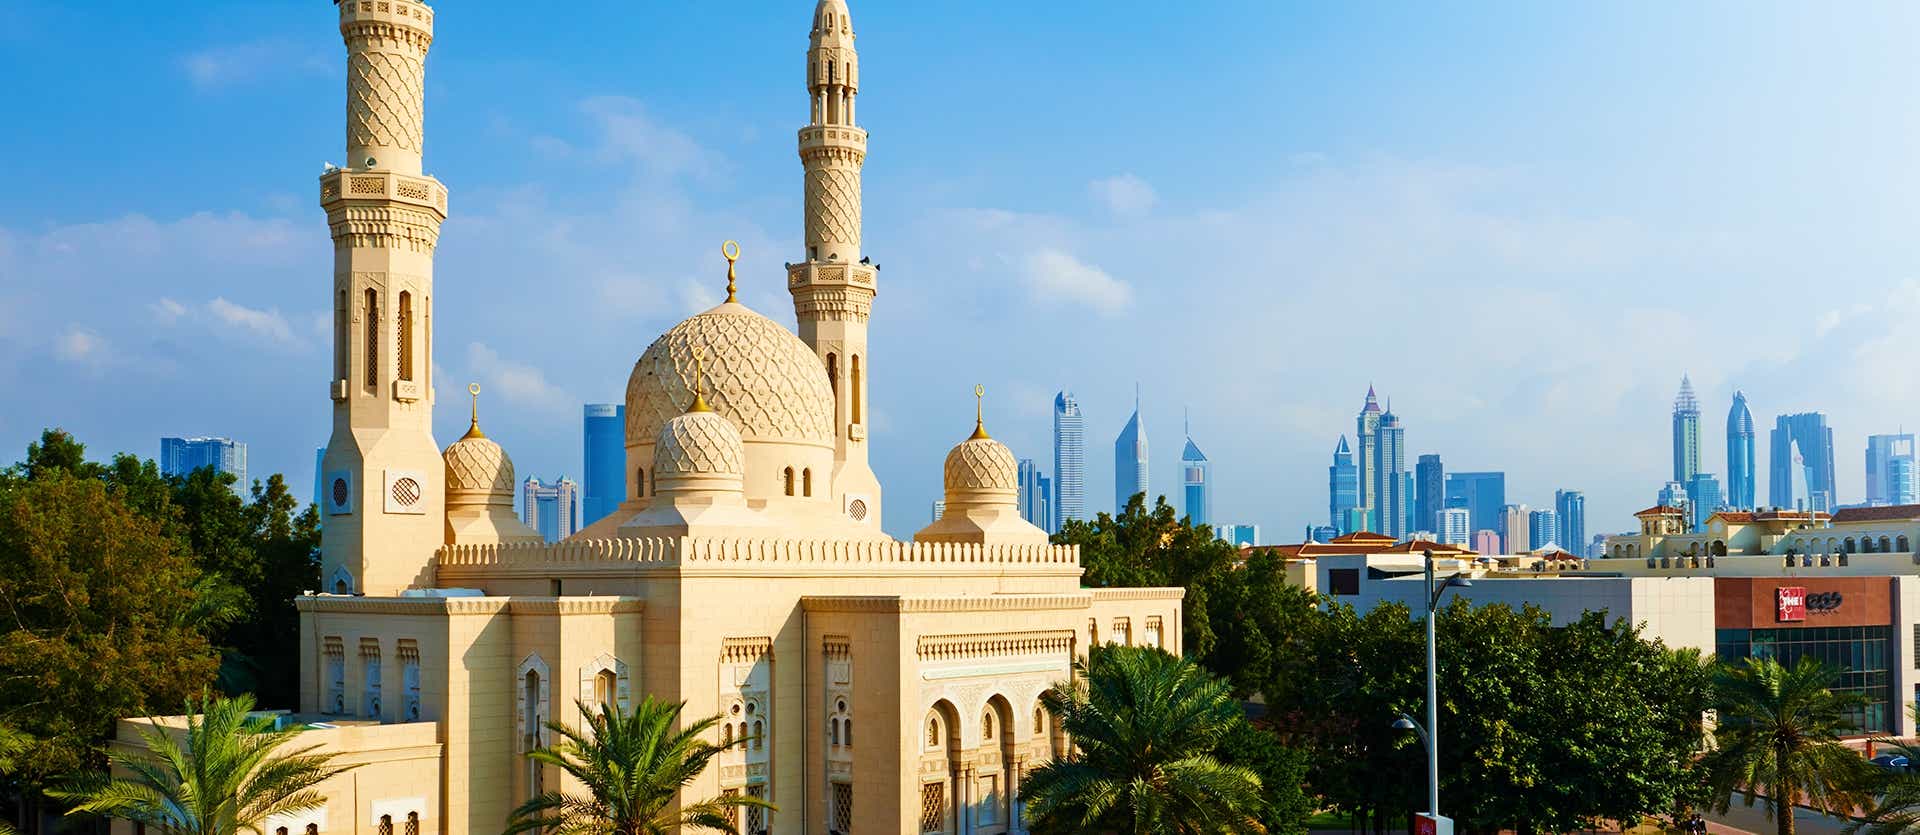 Dubai Mosque <span class="iconos separador"></span> Dubai <span class="iconos separador"></span> United Arab Emirates